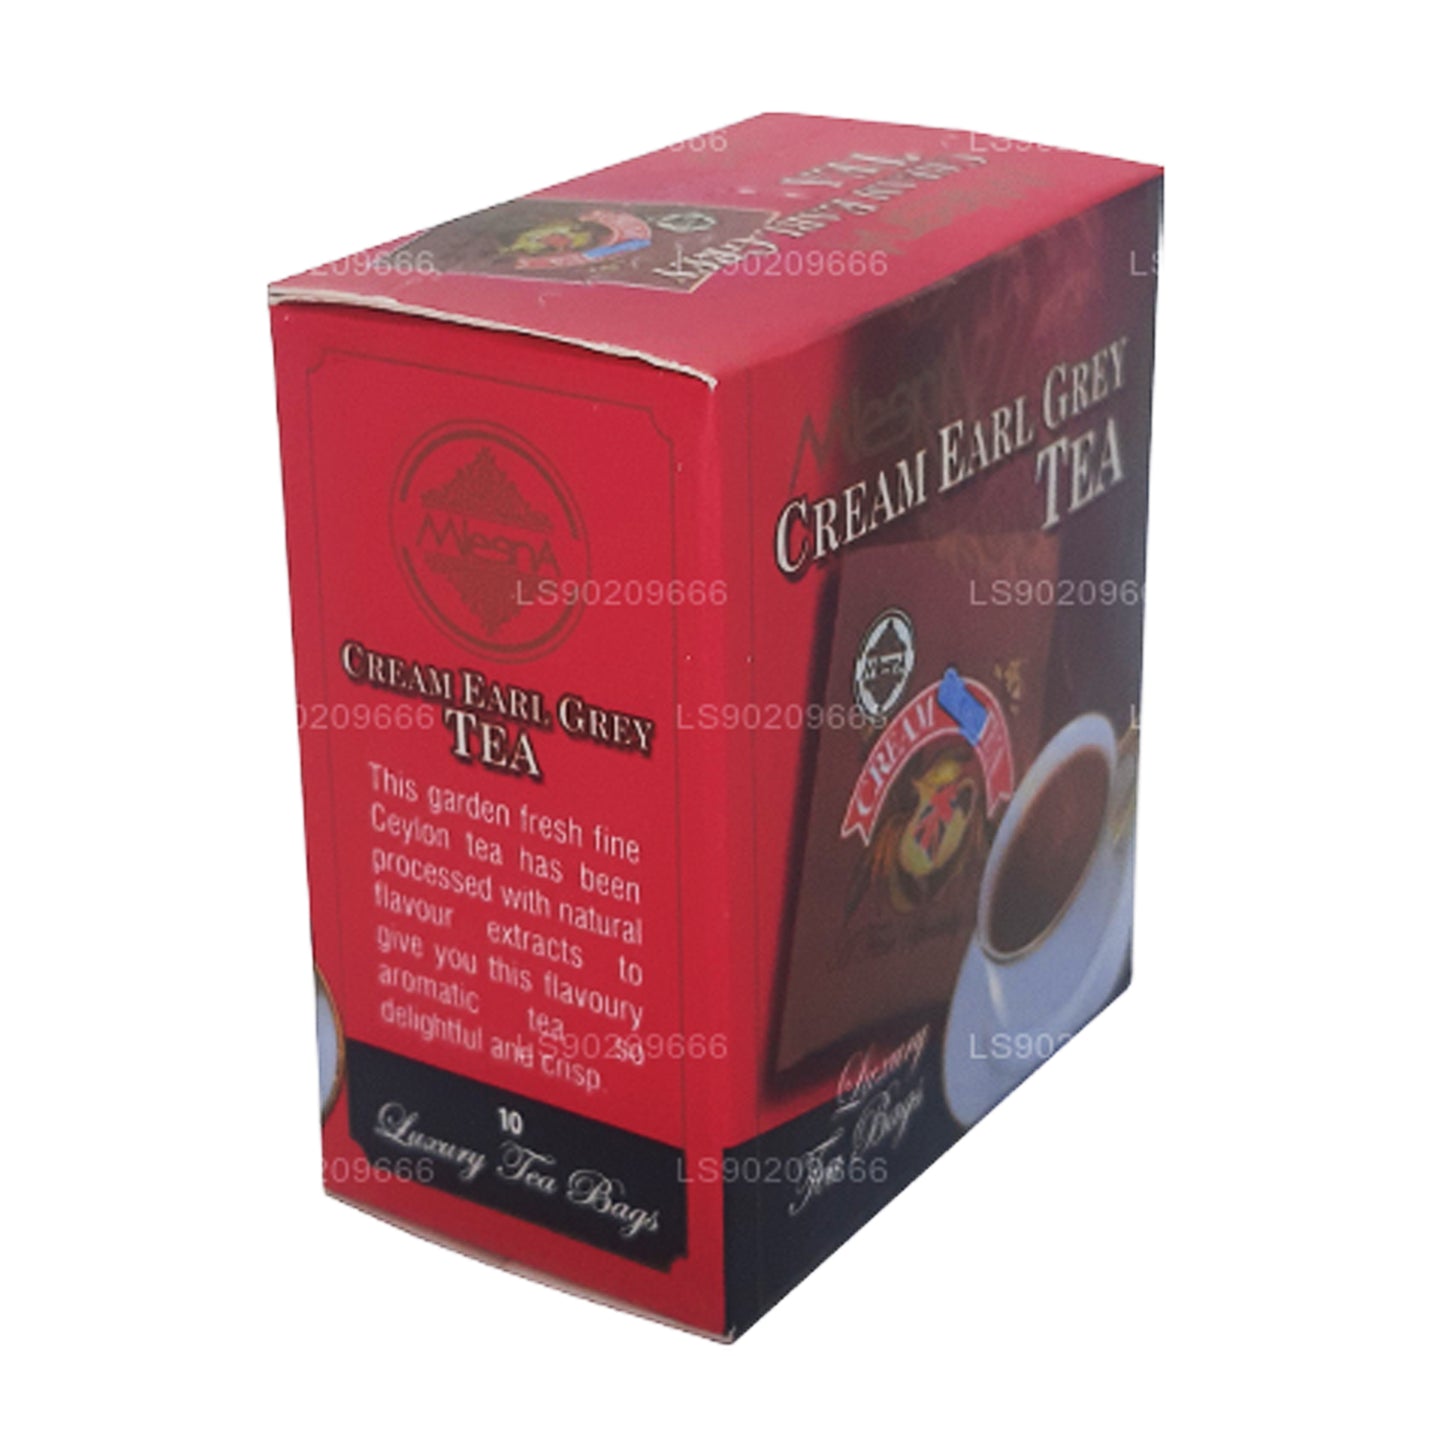 Thé Mlesna Cream Earl Grey (20g) 10 sachets de thé de luxe